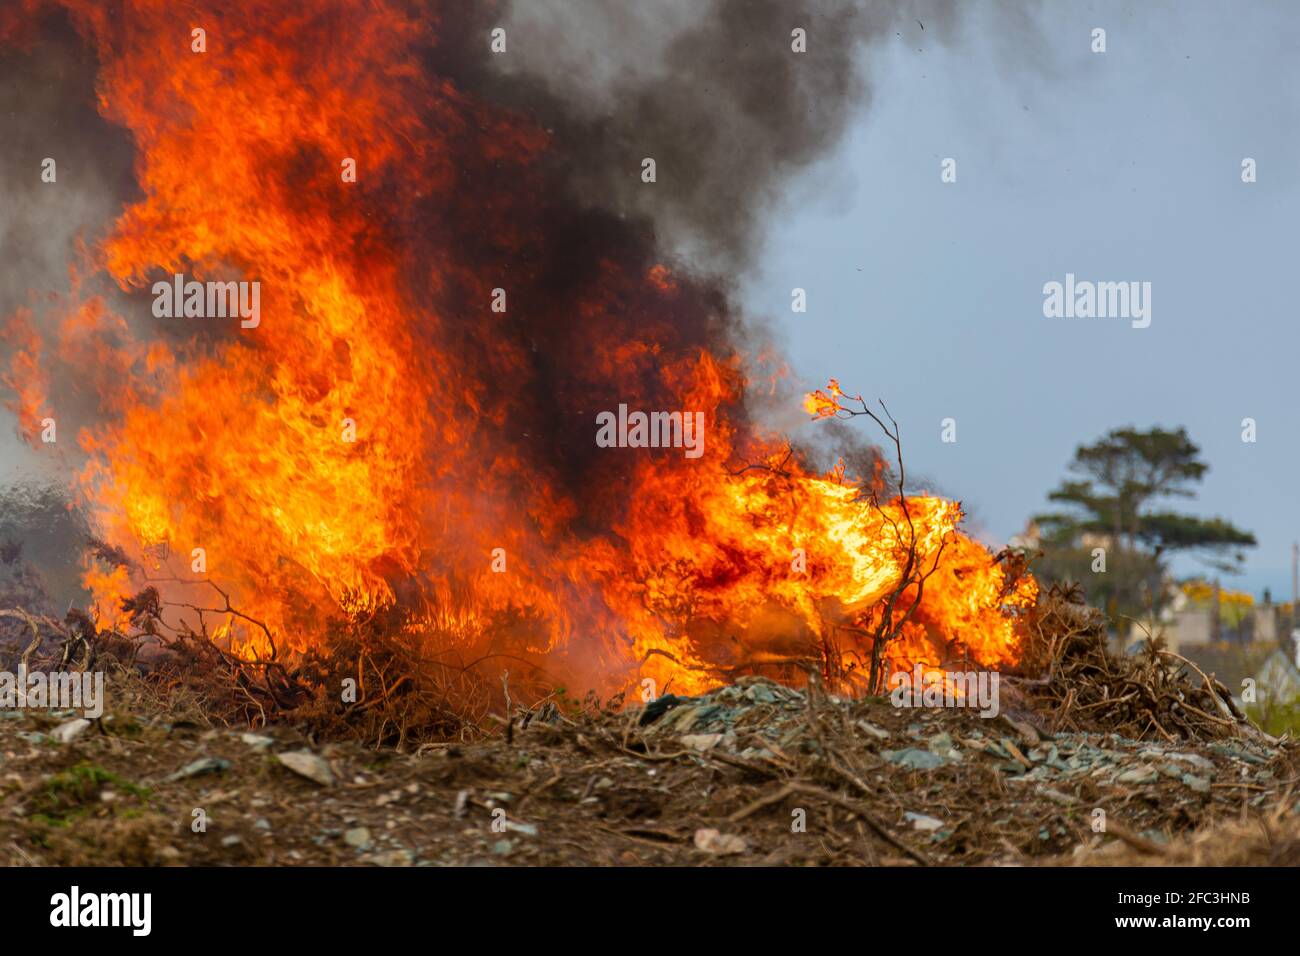 Gorse burning. Stock Photo